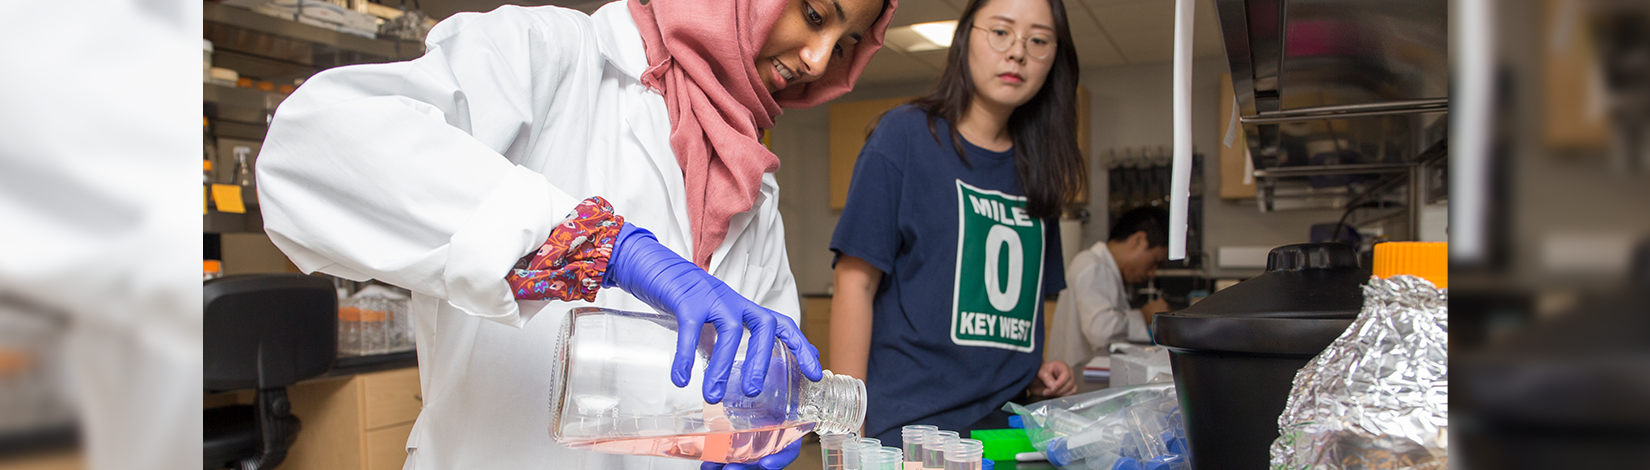 白色实验室外套中的女性CALS学生将液体倒入测试管中